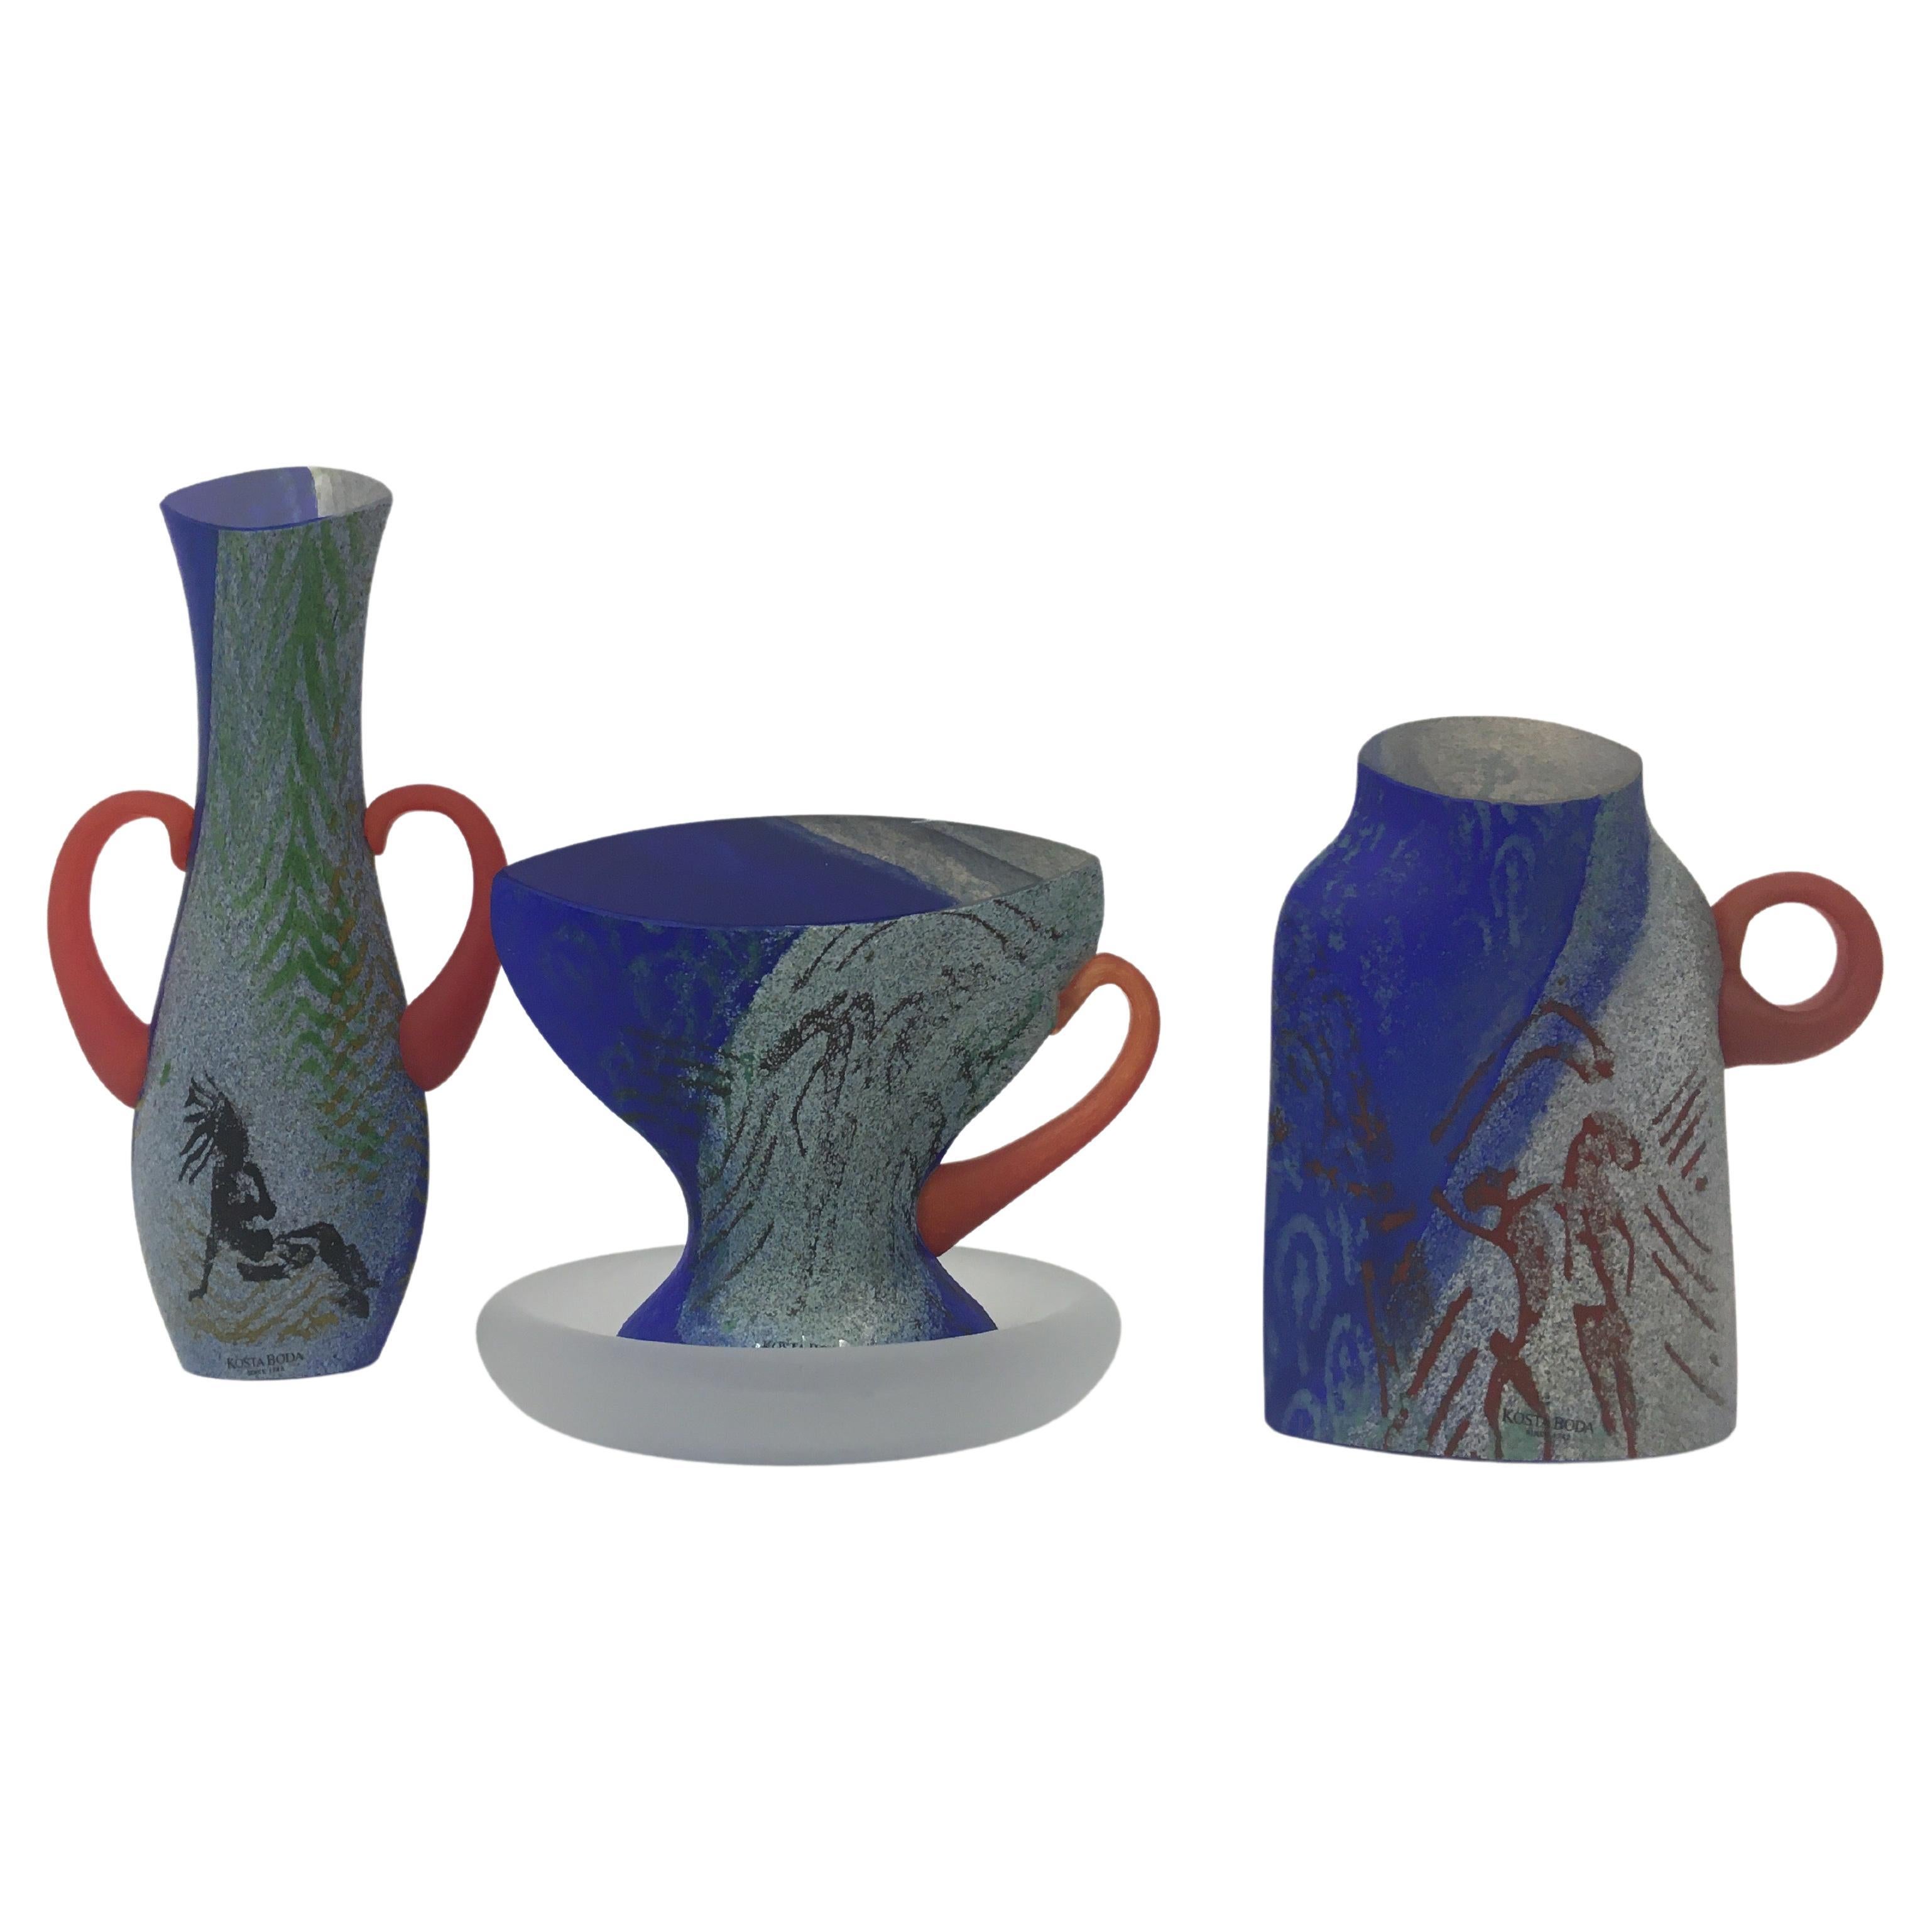 Rare Kjell Engman for Kosta Boda set of glassware teacup vase and sugar pot For Sale